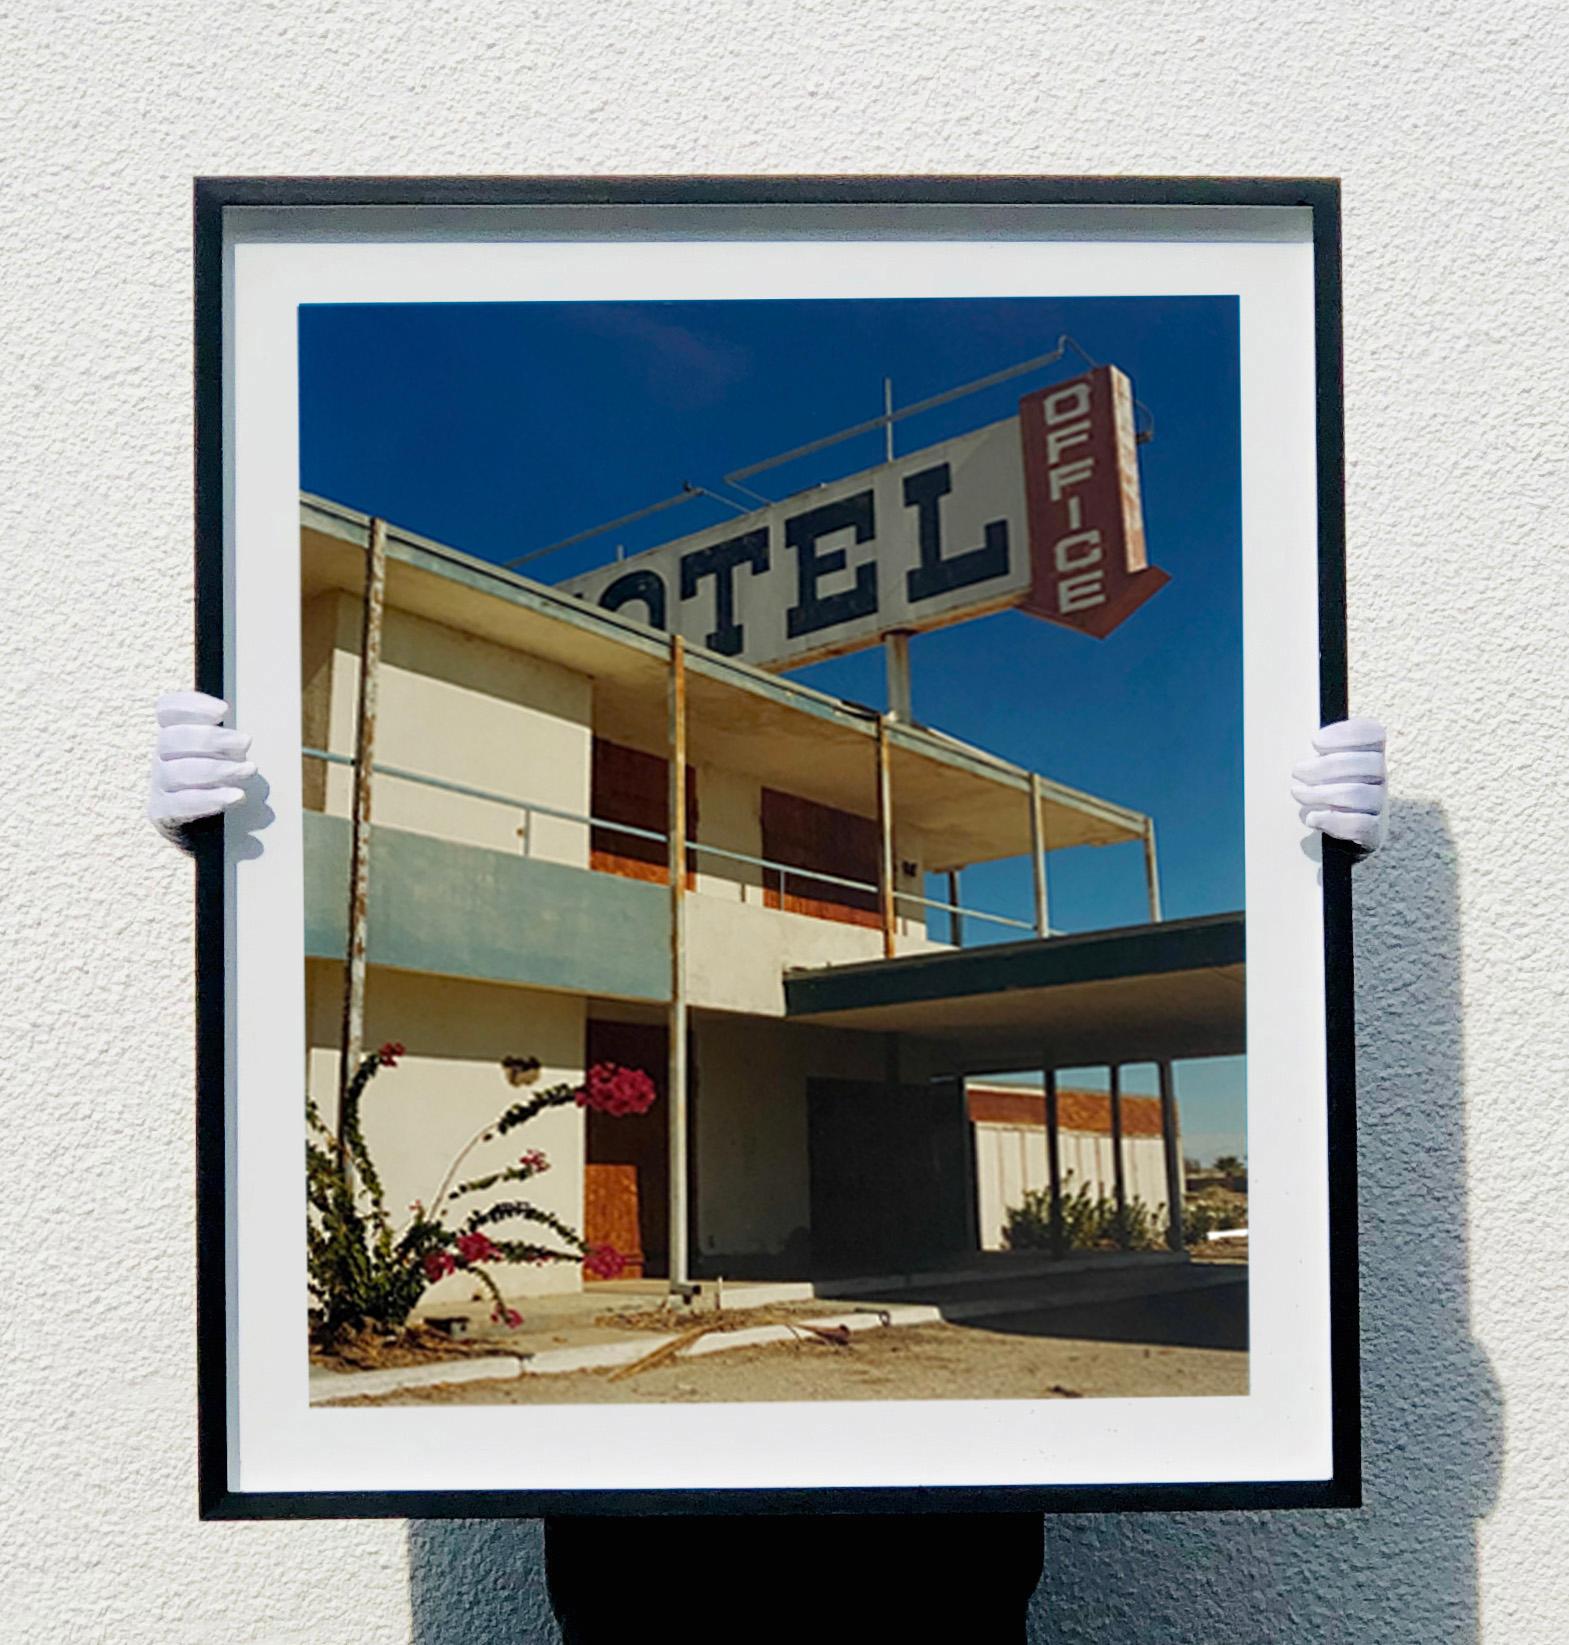 North Shore Motel Office II, Salton Sea, Kalifornien – architektonisches Farbfoto – Photograph von Richard Heeps